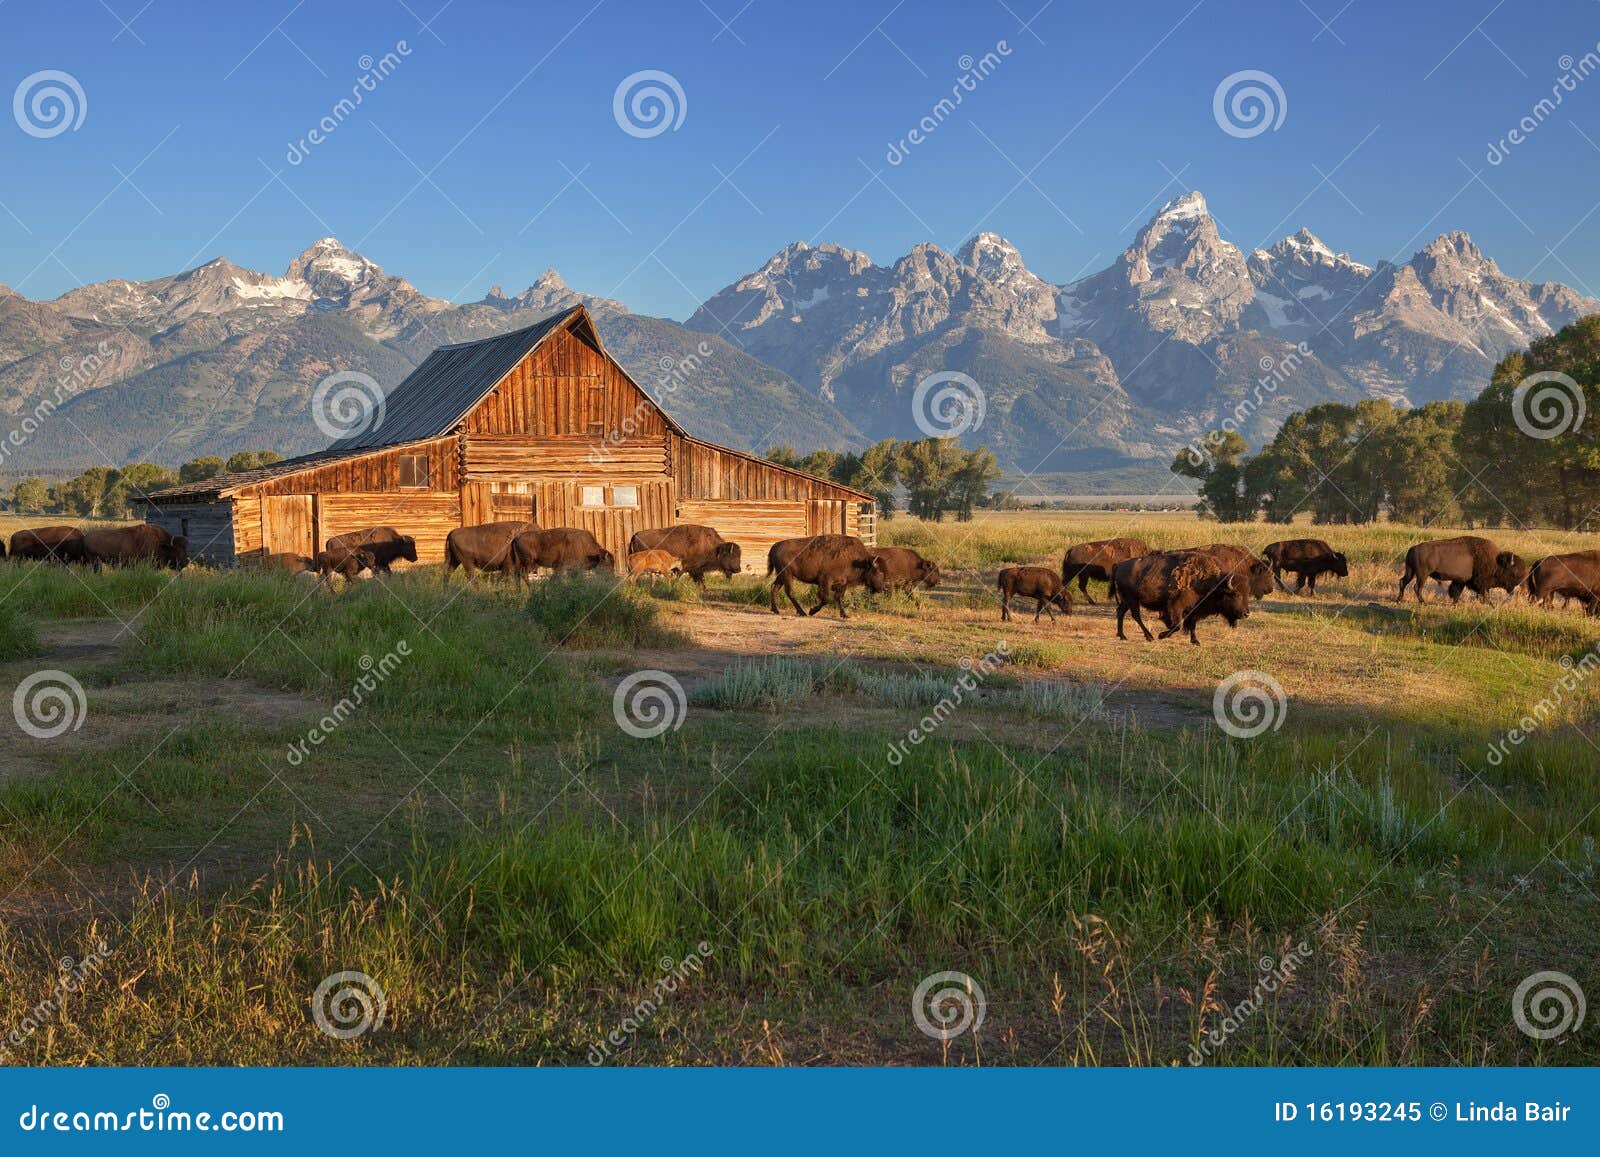 bison passing by moulton barn, grand teton np